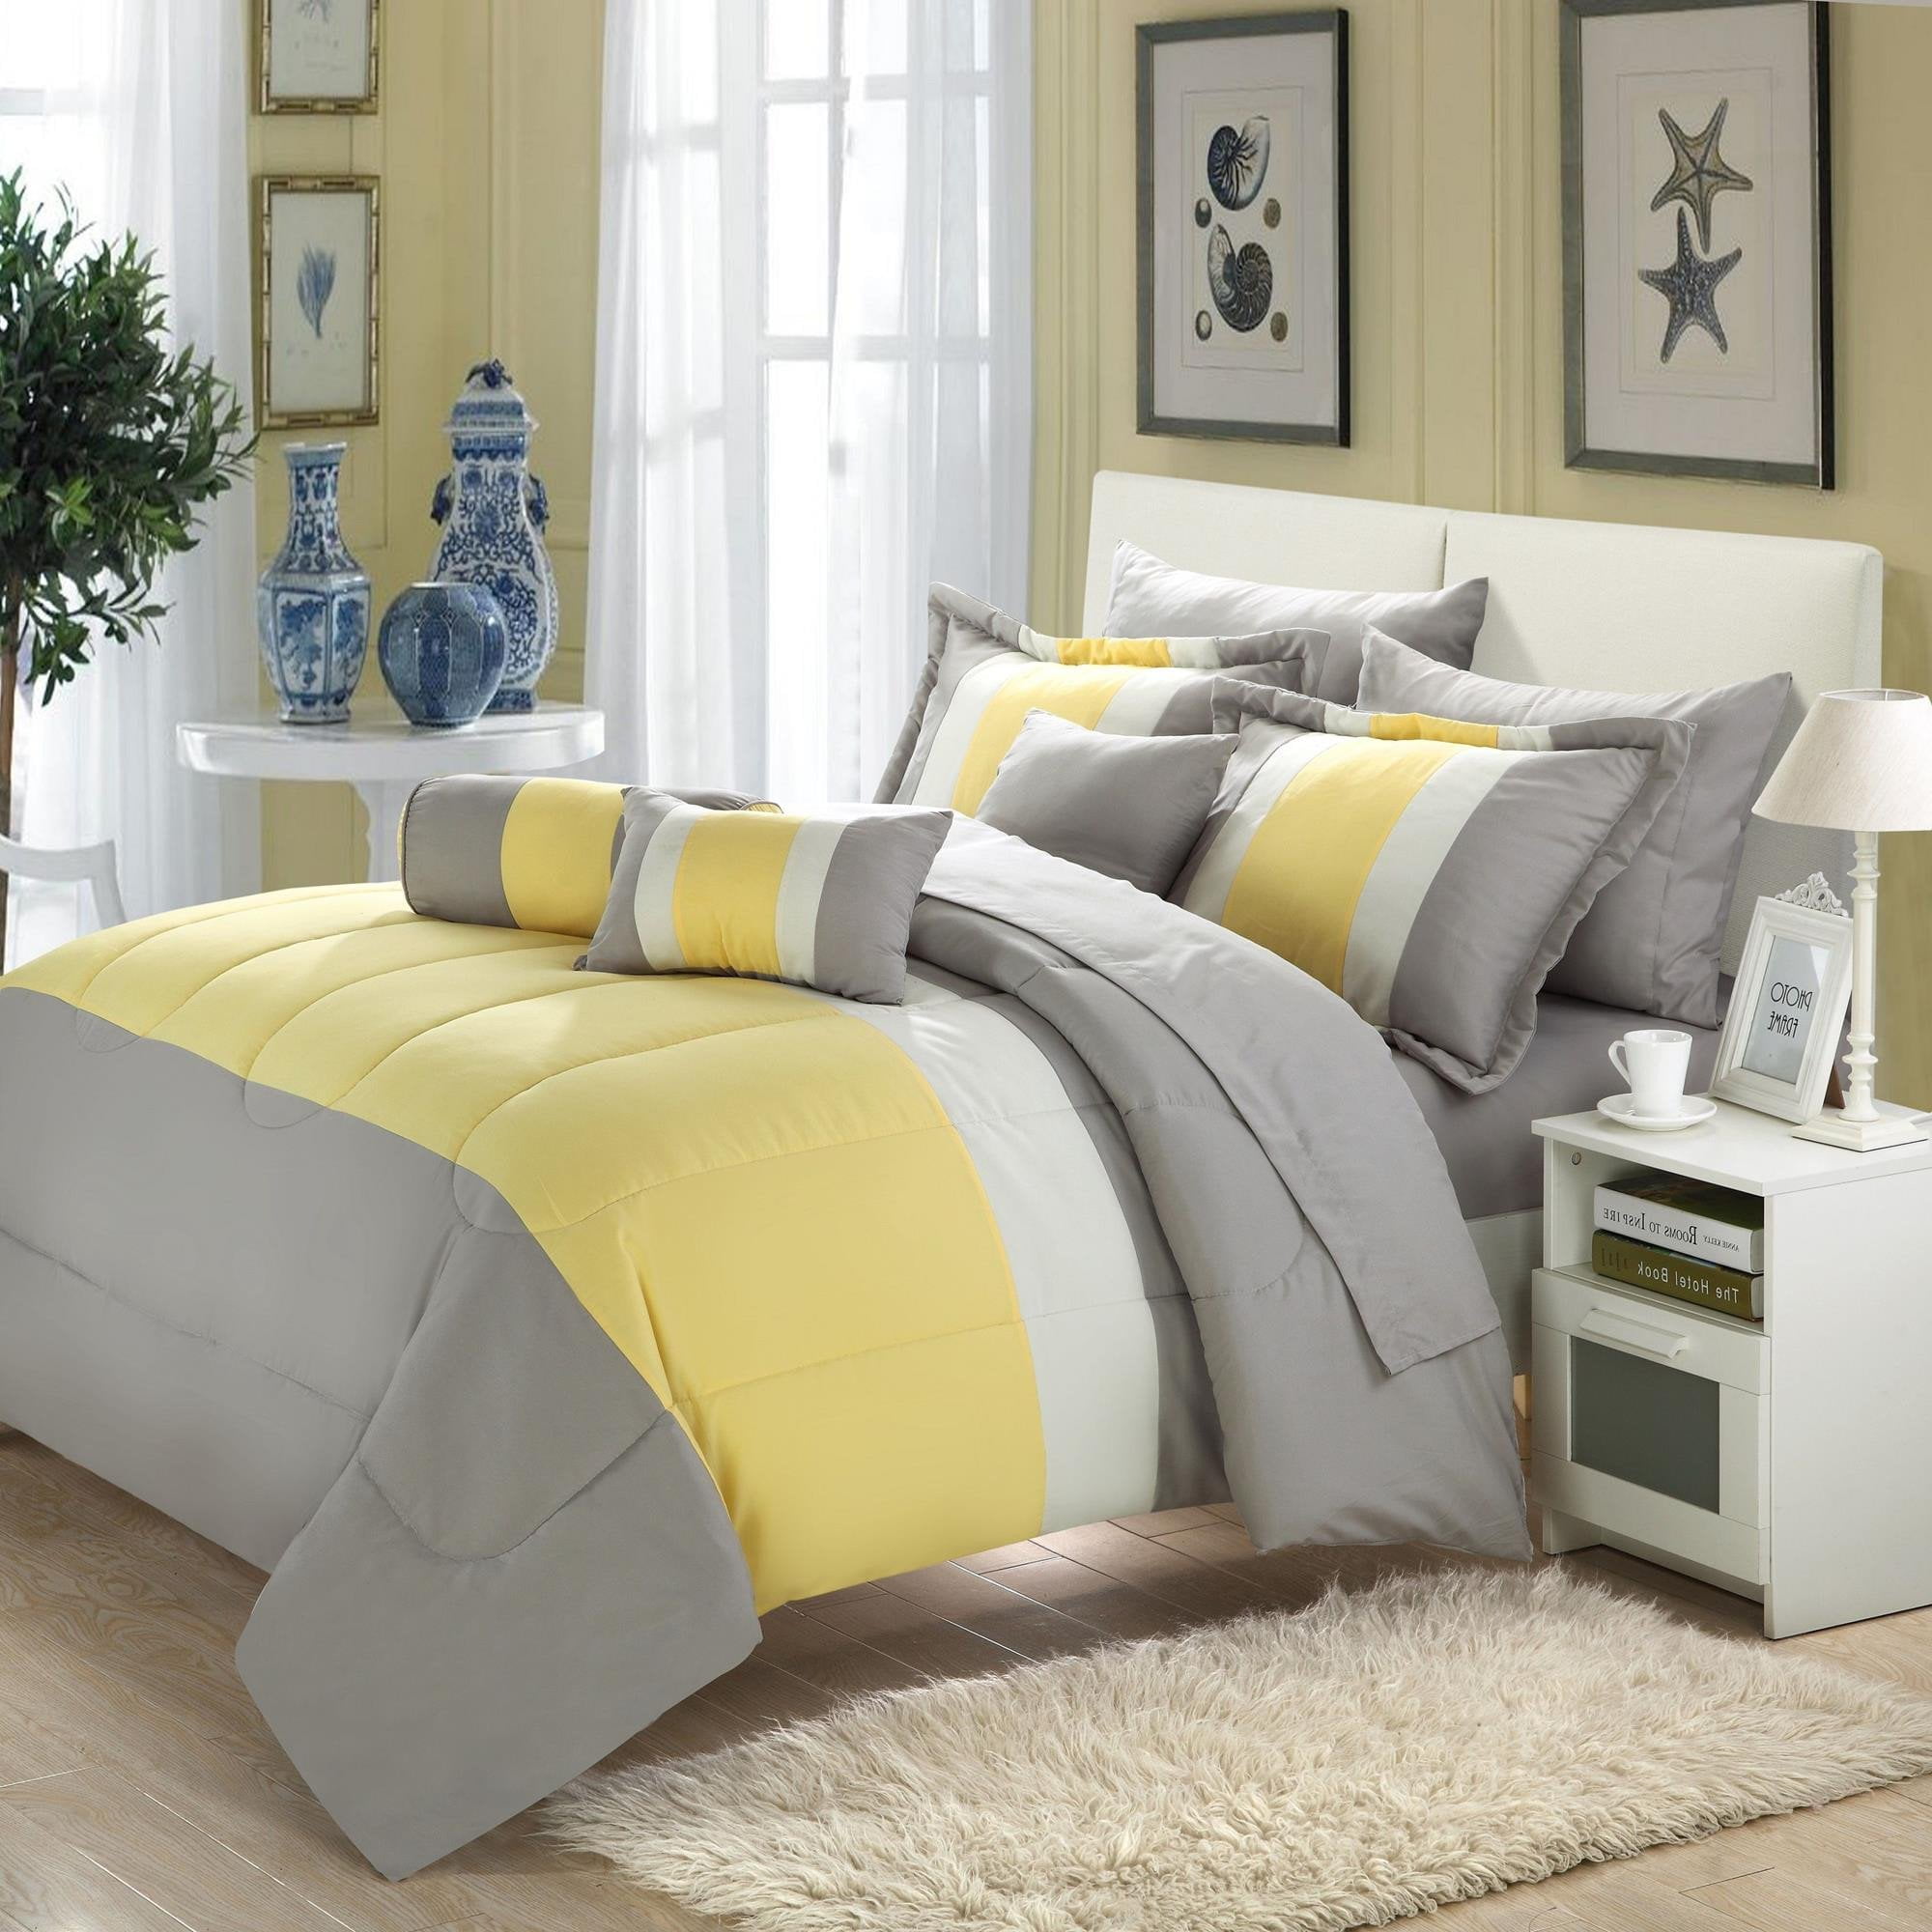 Serenity Yellow & Grey Queen 10 Piece Comforter Bed In A Bag Set ...